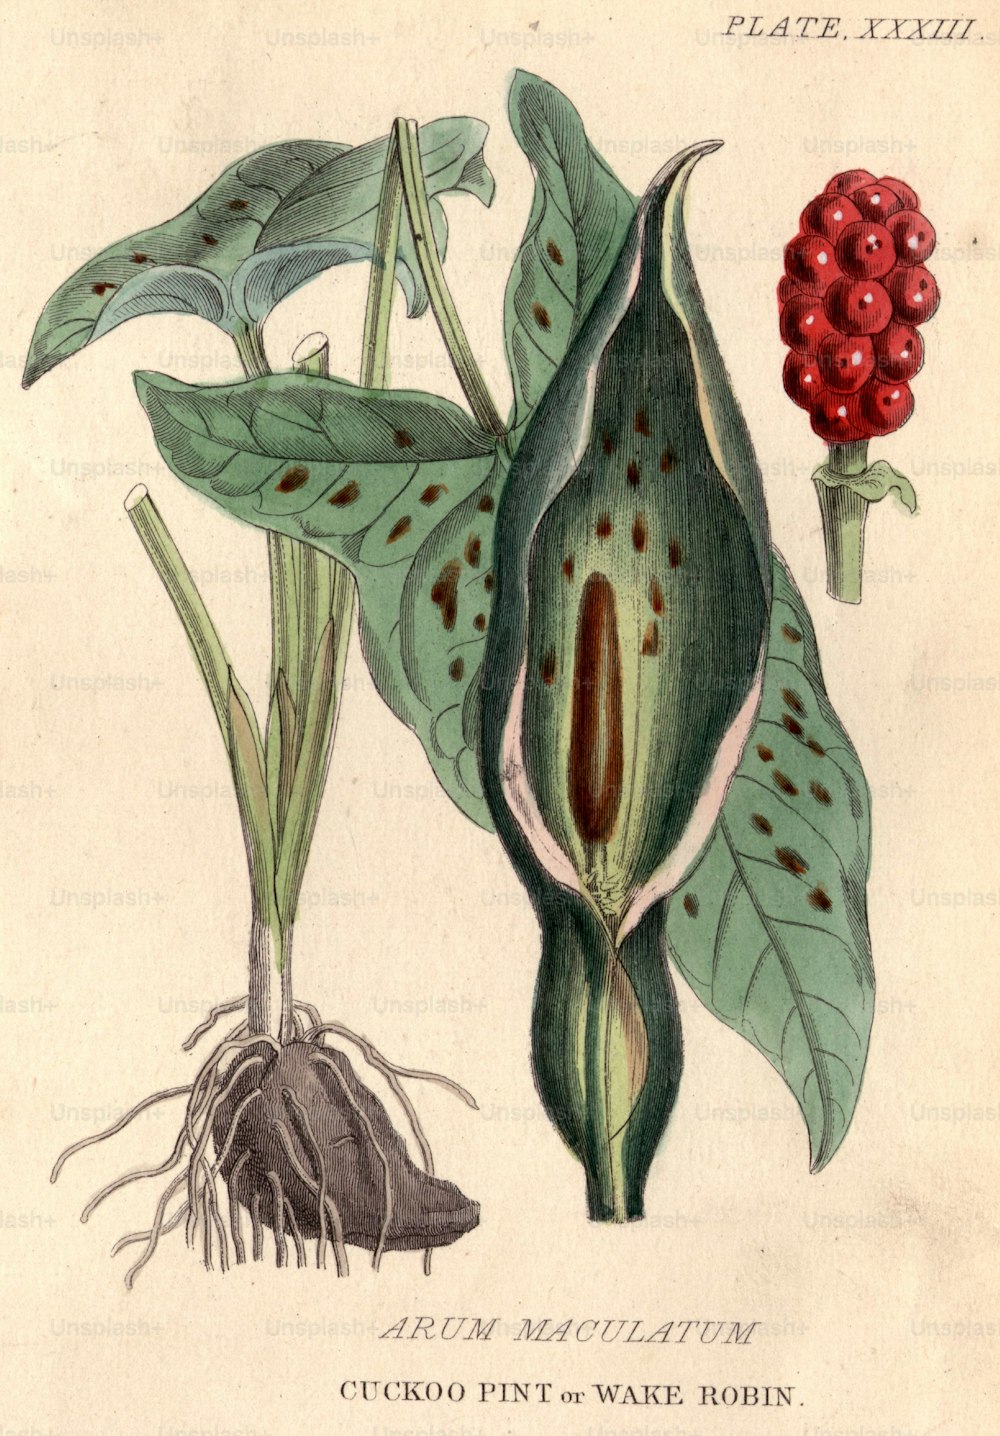 por volta de 1800: Arum maculatum, cerveja cuco, ou robin de vigília, com suas bagas vermelhas distintas e altamente venenosas.  (Foto: Hulton Archive/Getty Images)